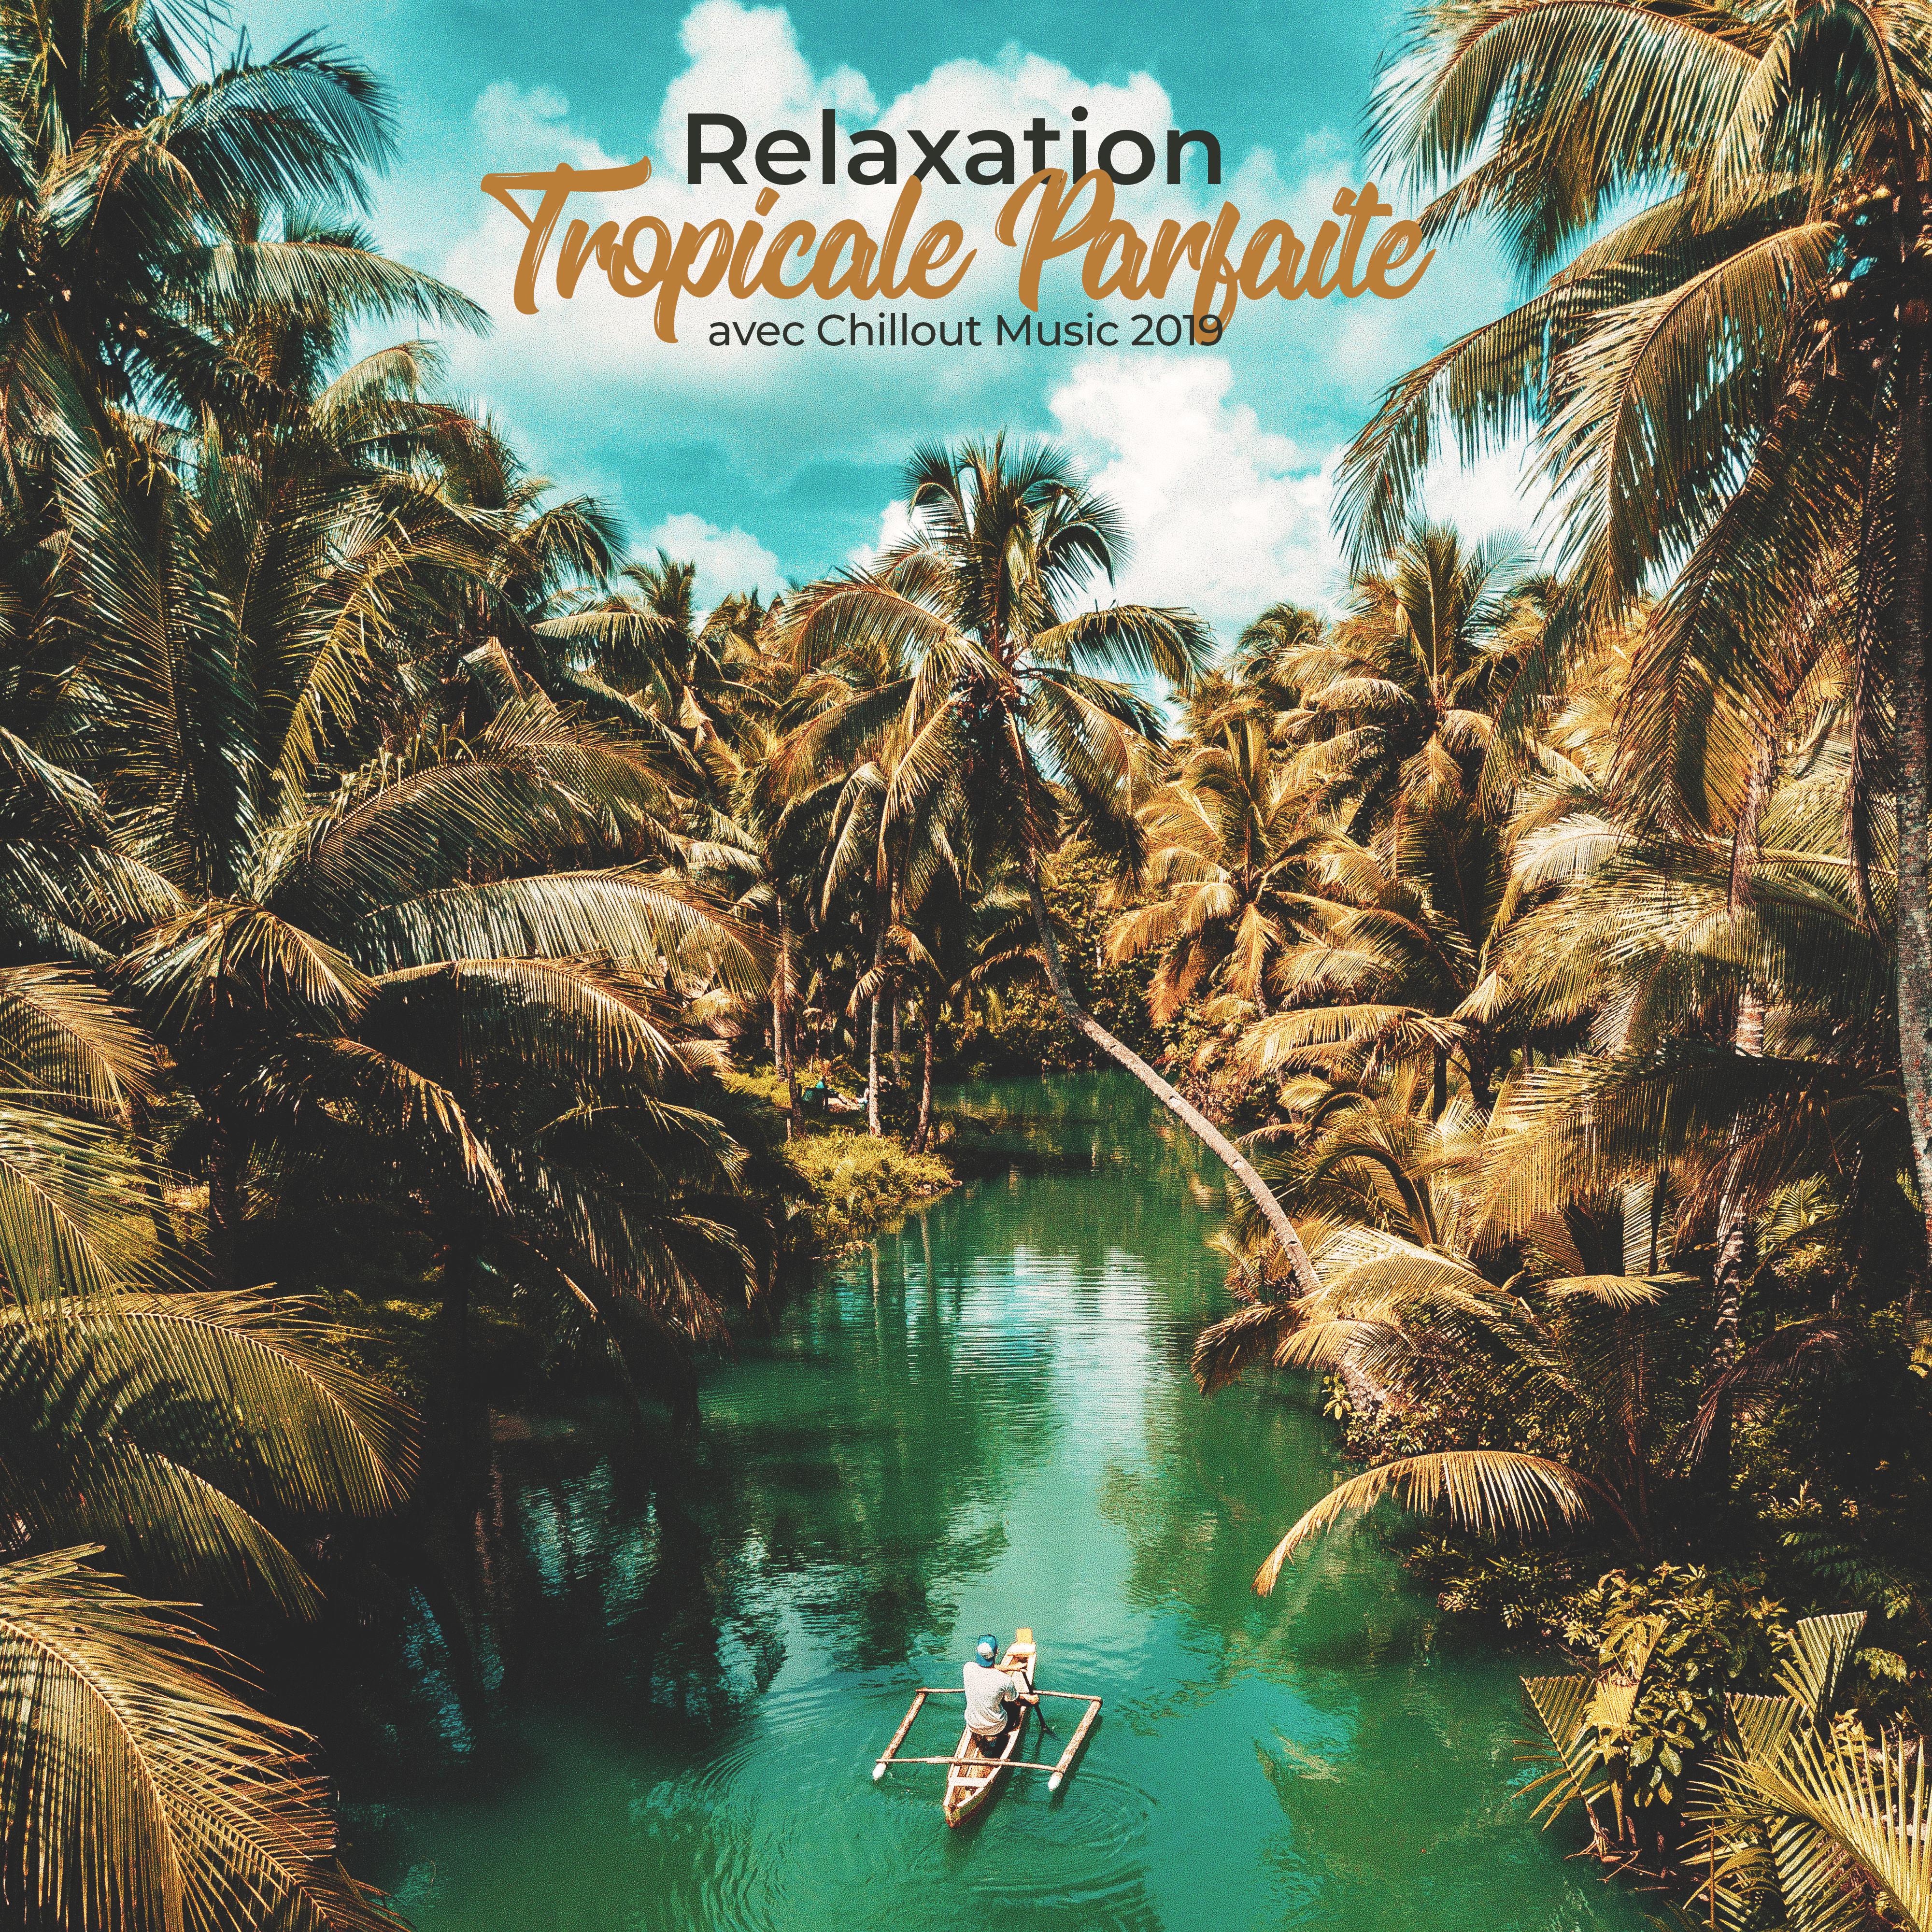 Relaxation Tropicale Parfaite avec Chillout Music 2019